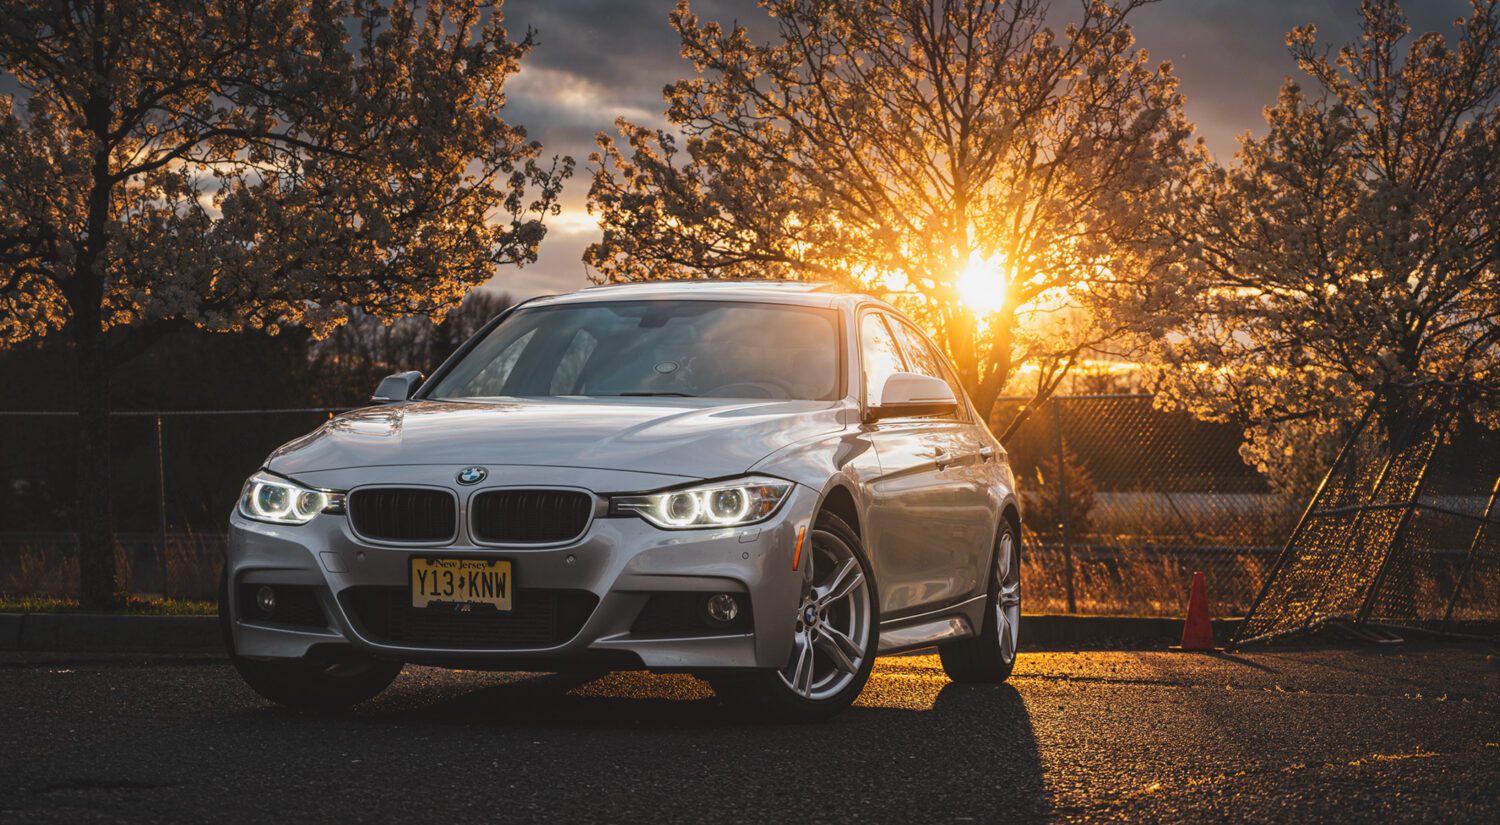 BMW 335i sunset